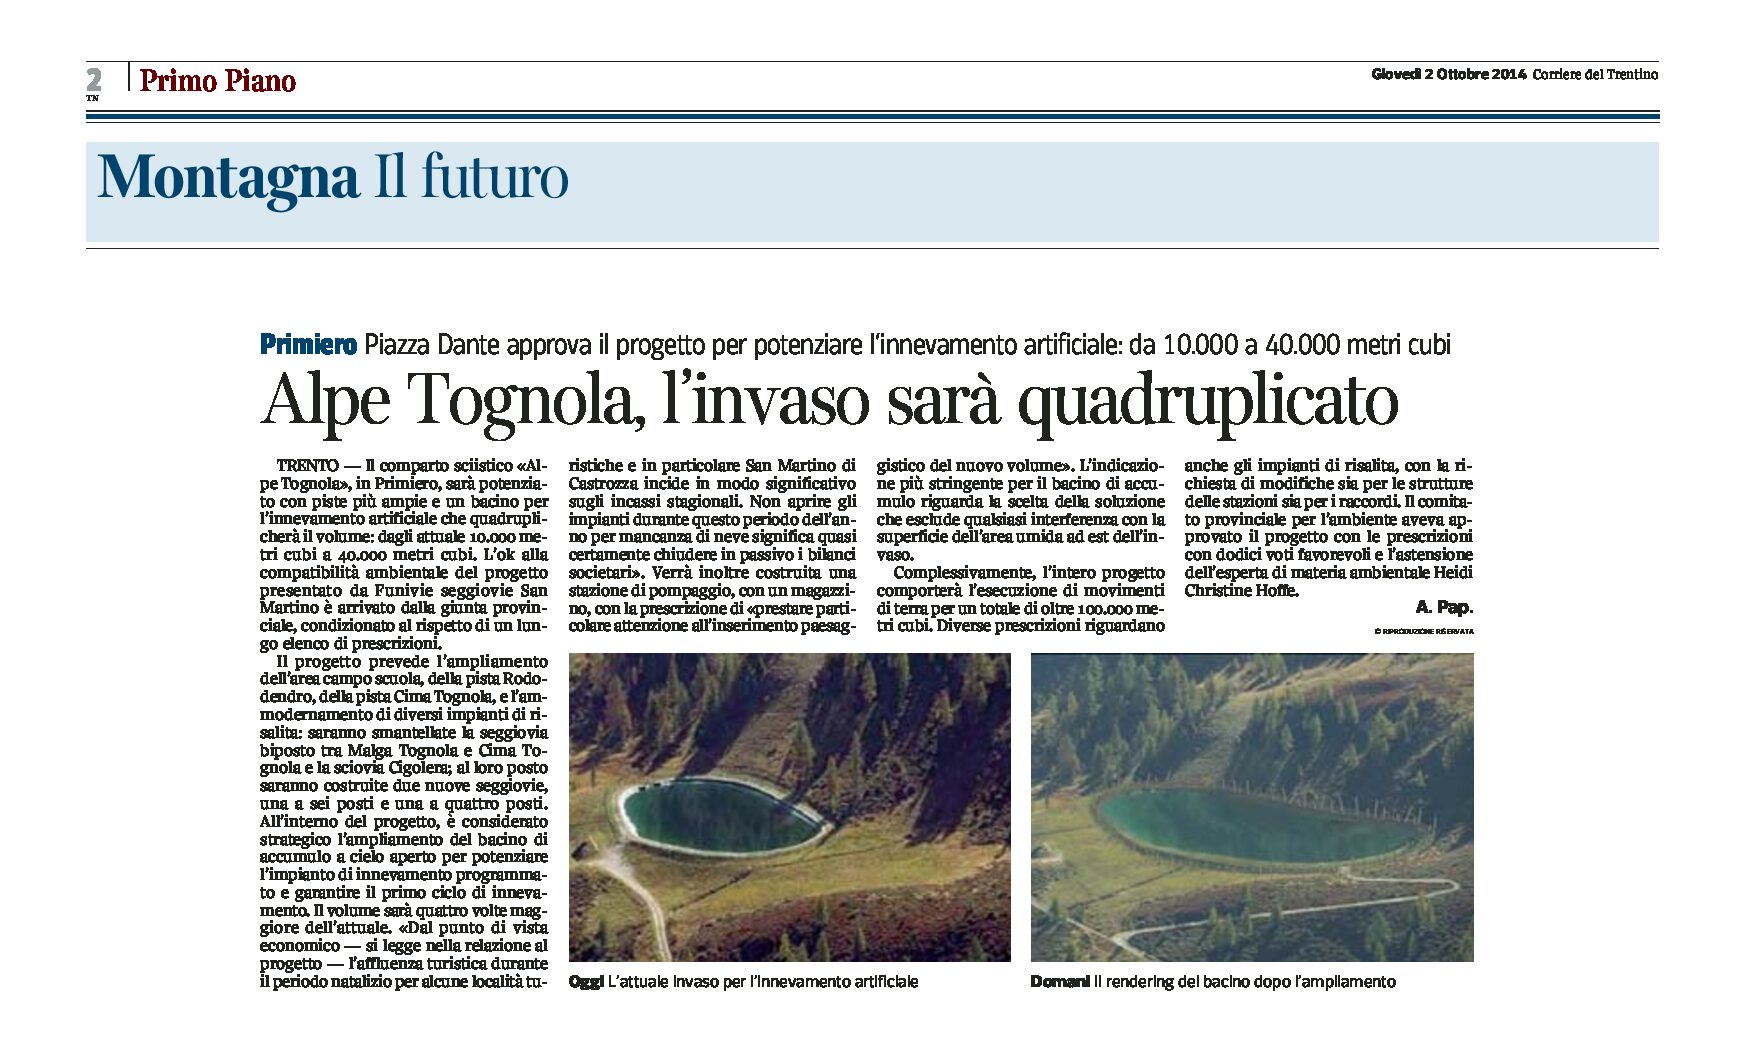 Primiero: Alpe Tognola, l’invaso sarà quadruplicato